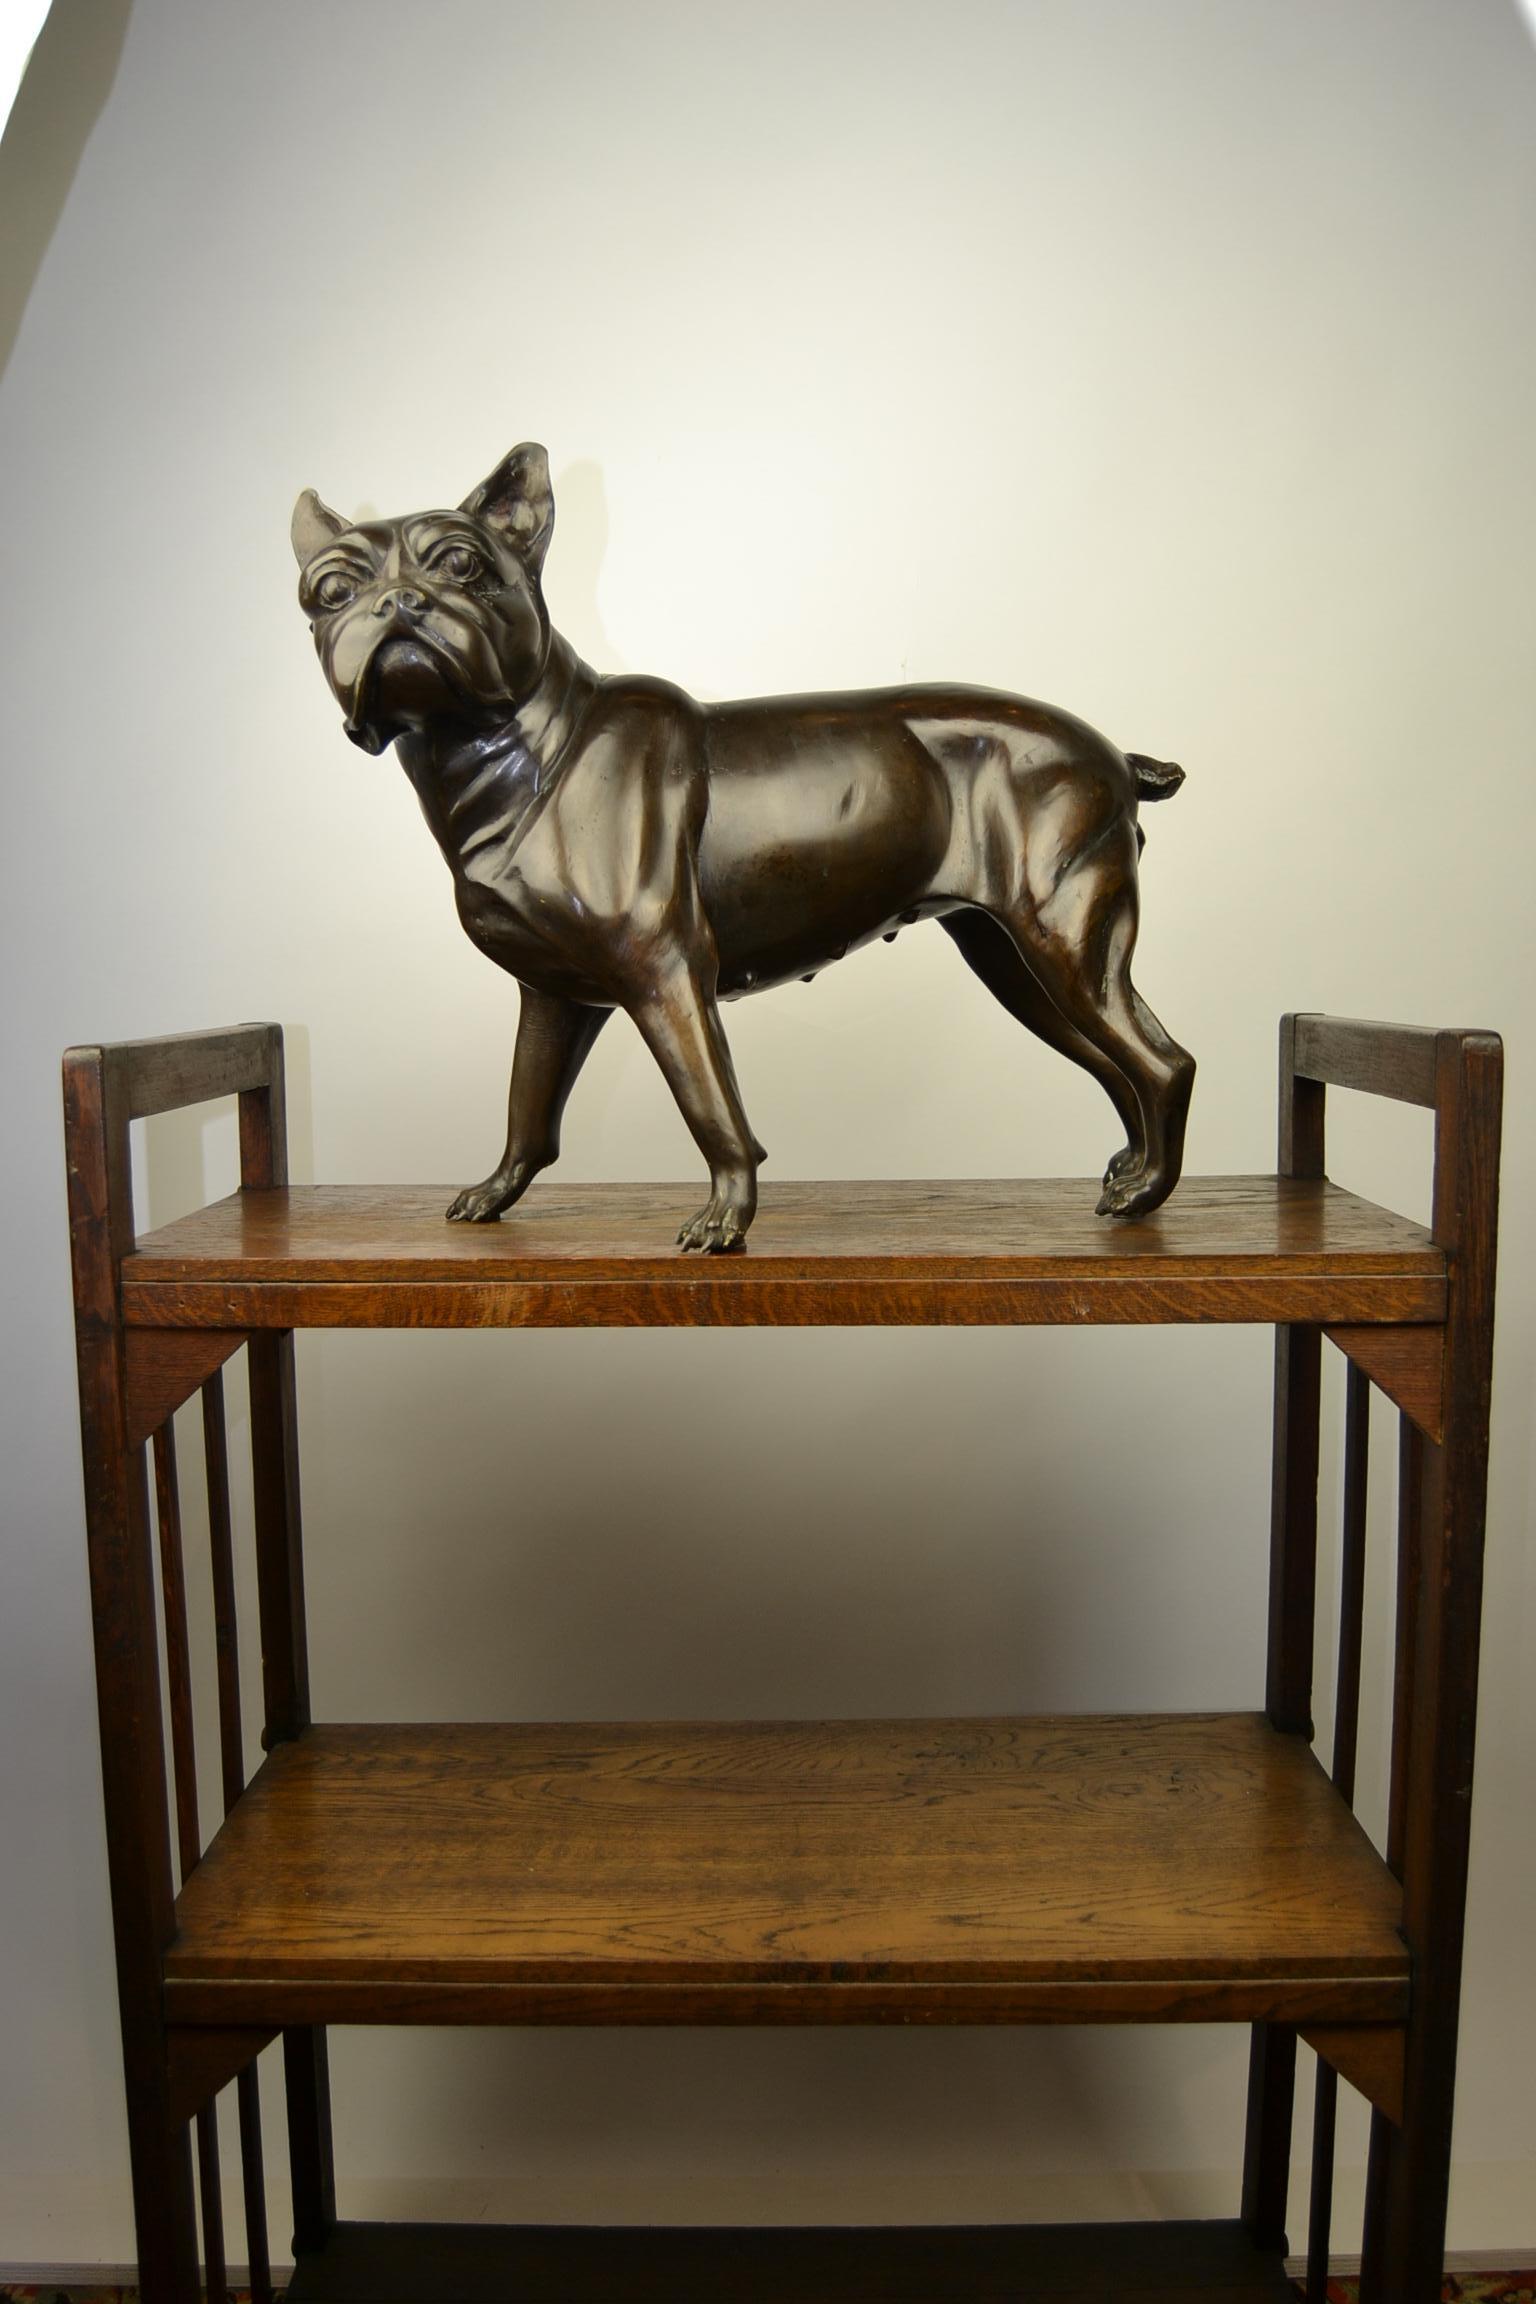 Lebensgroße Vintage-Bronze-Tier-Statue, Hundestatue .
Detaillierte Figur einer französischen Bulldogge - Boston Terrier.
Großartiger Wohnakzent - Objekt für die Inneneinrichtung.